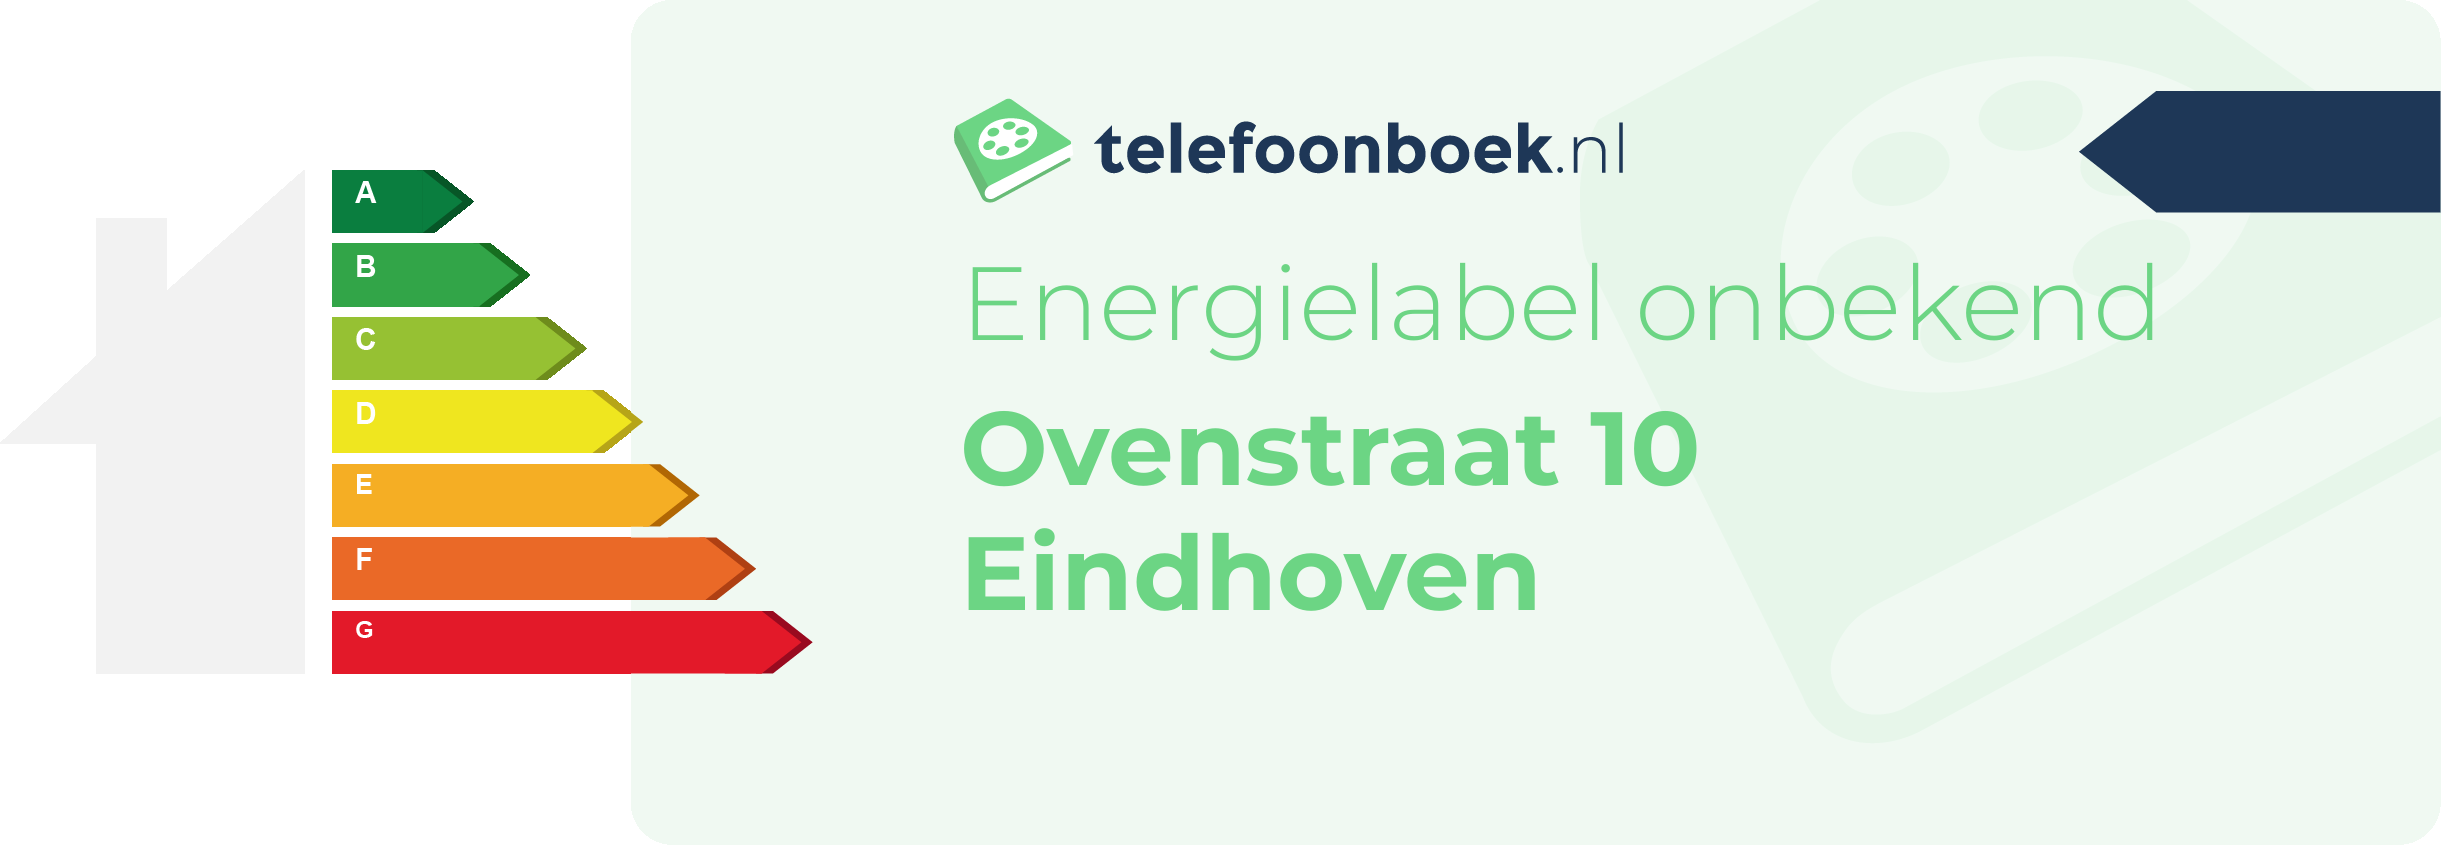 Energielabel Ovenstraat 10 Eindhoven